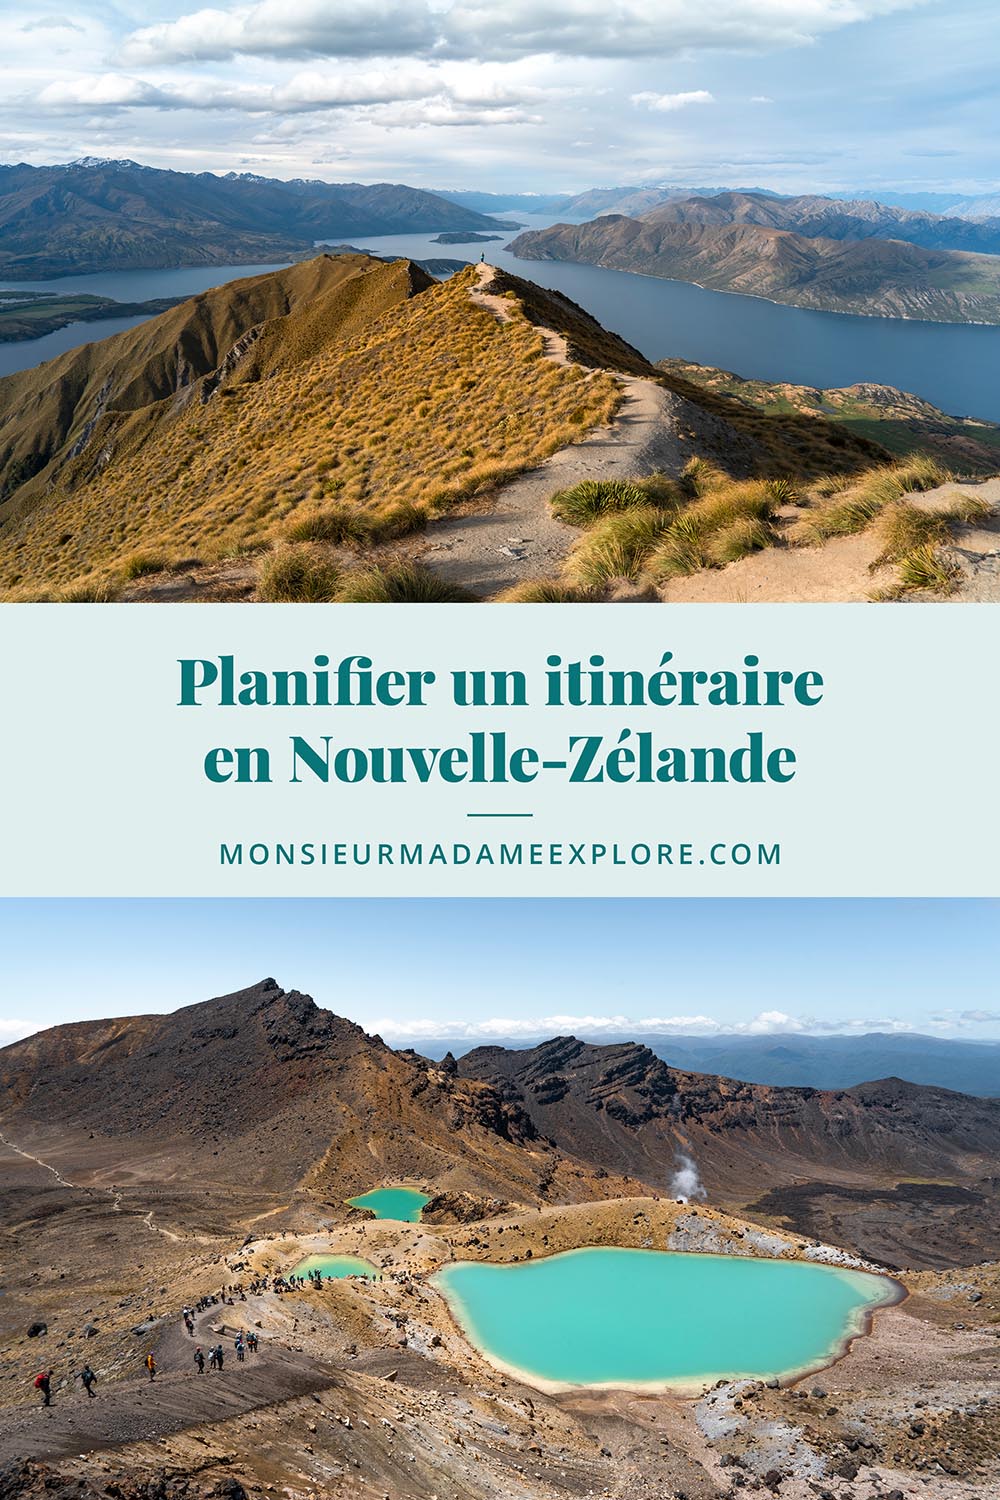 Planifier un itinéraire en Nouvelle-Zélande, Monsieur+Madame Explore, Blogue de voyage / A one month itinerary in New Zealand, Aotearoa, NZ